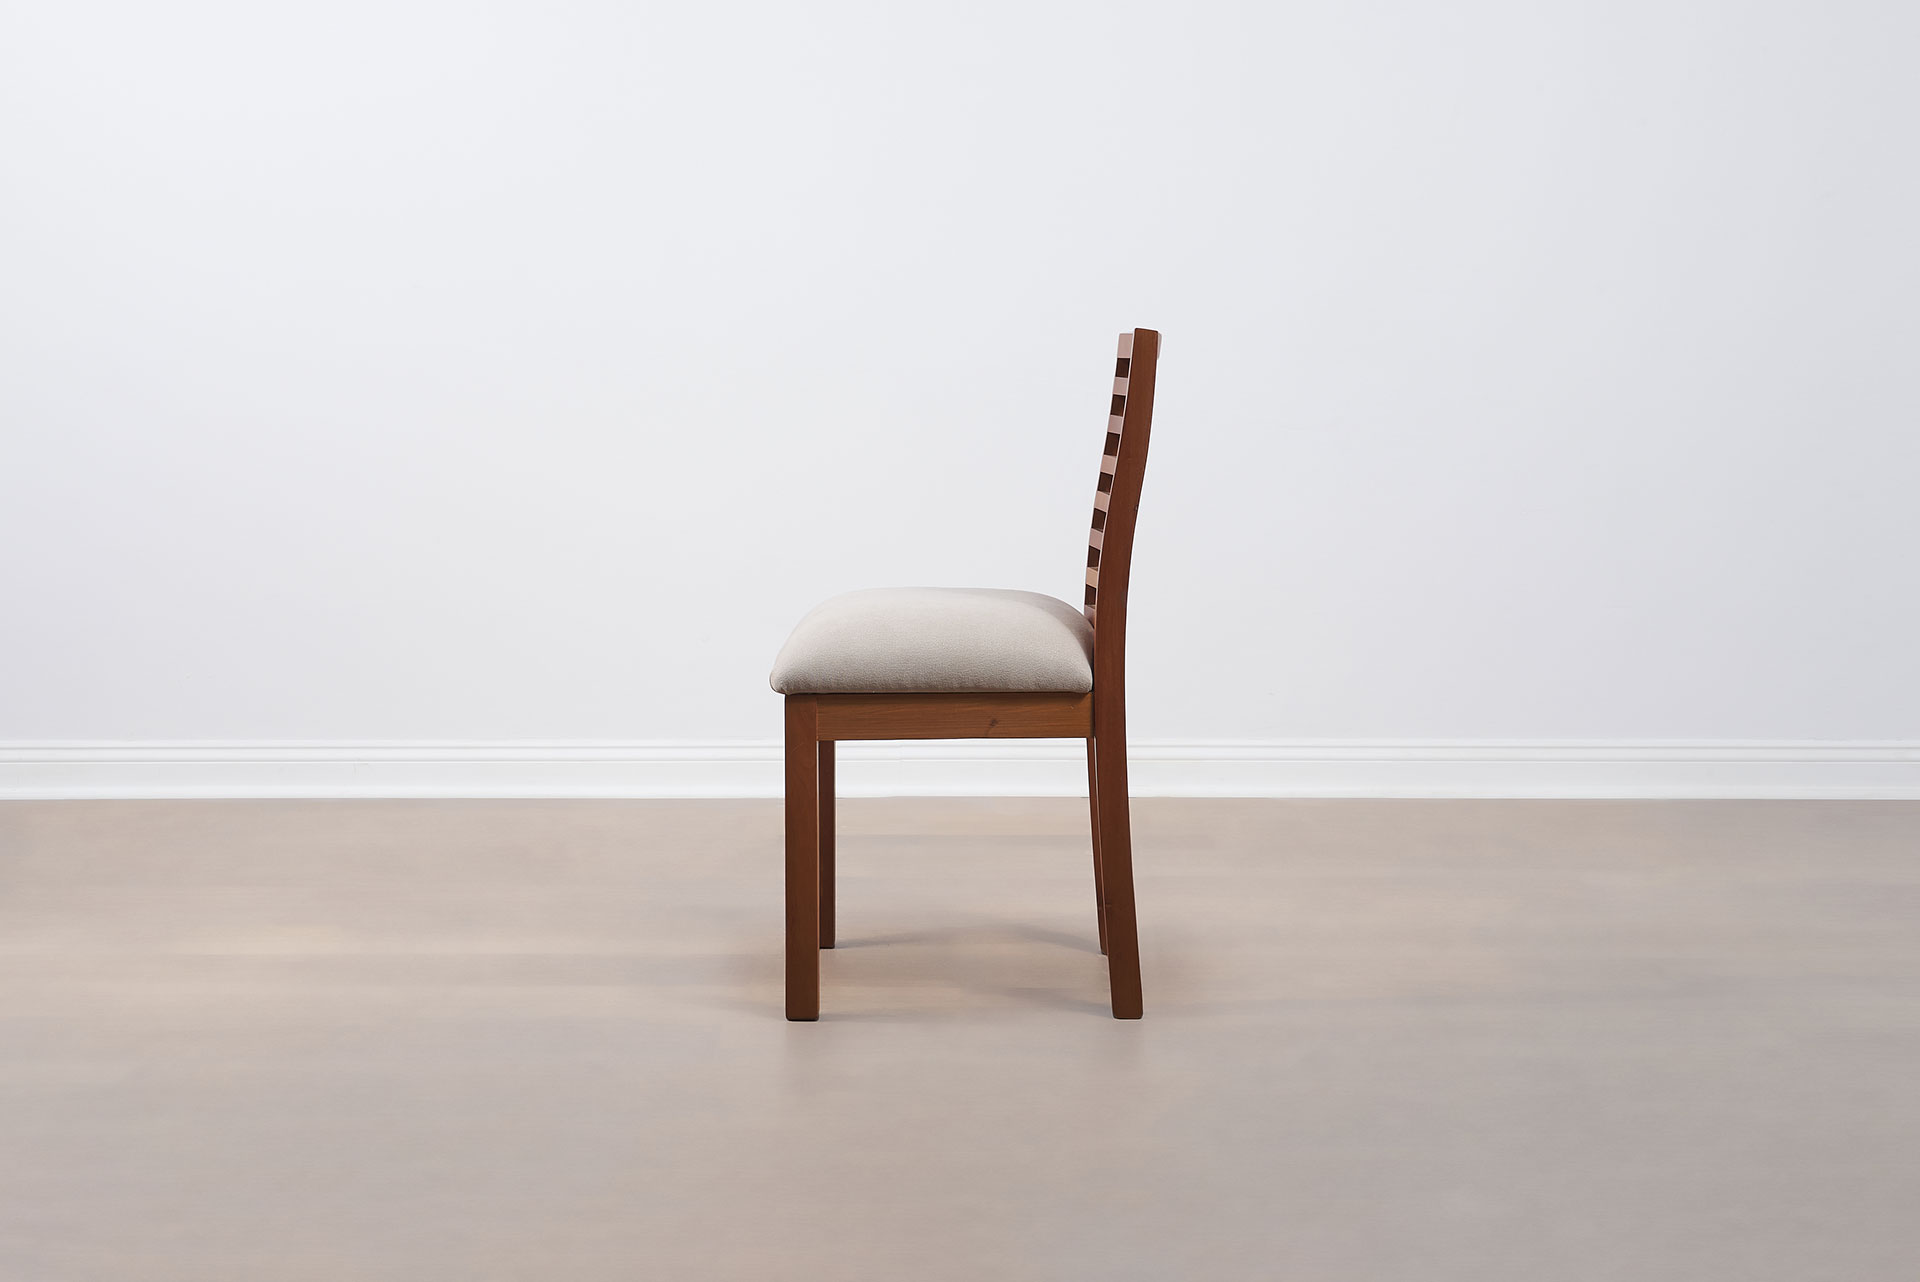 Muebles-Santander_Silla-Mieres_4581_silla_madera_textil